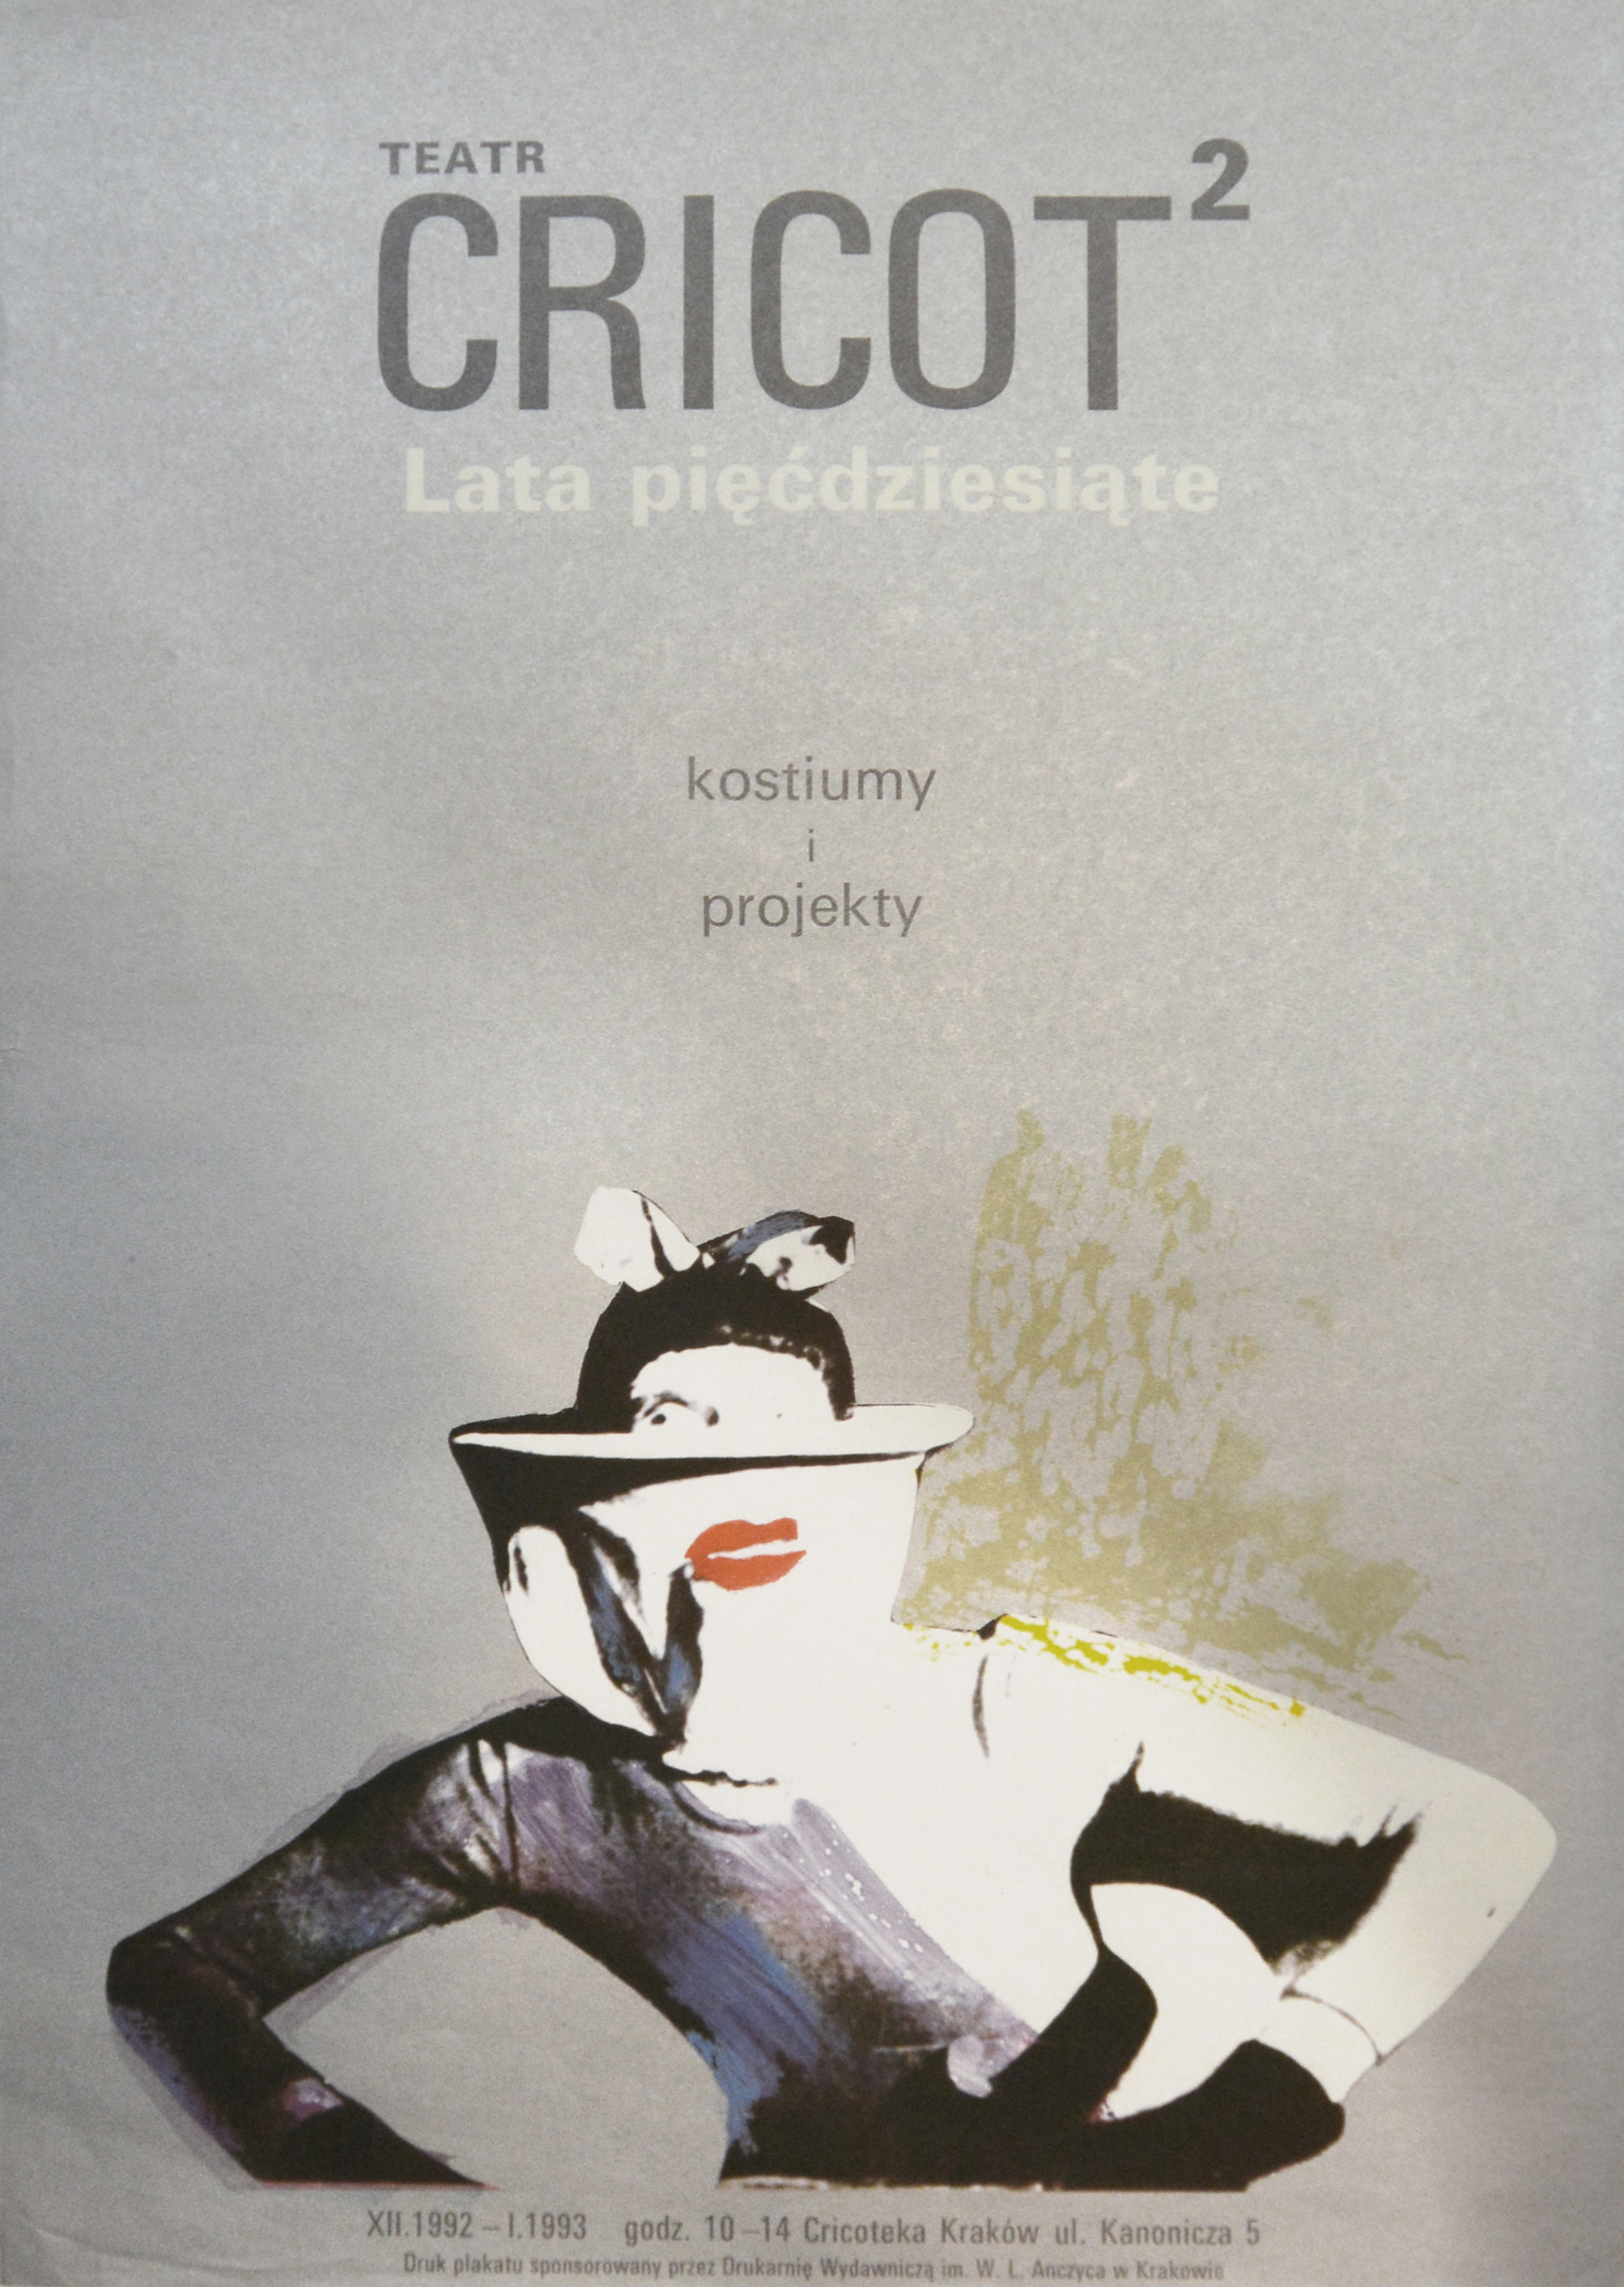 Teatr Cricot 2., 1992